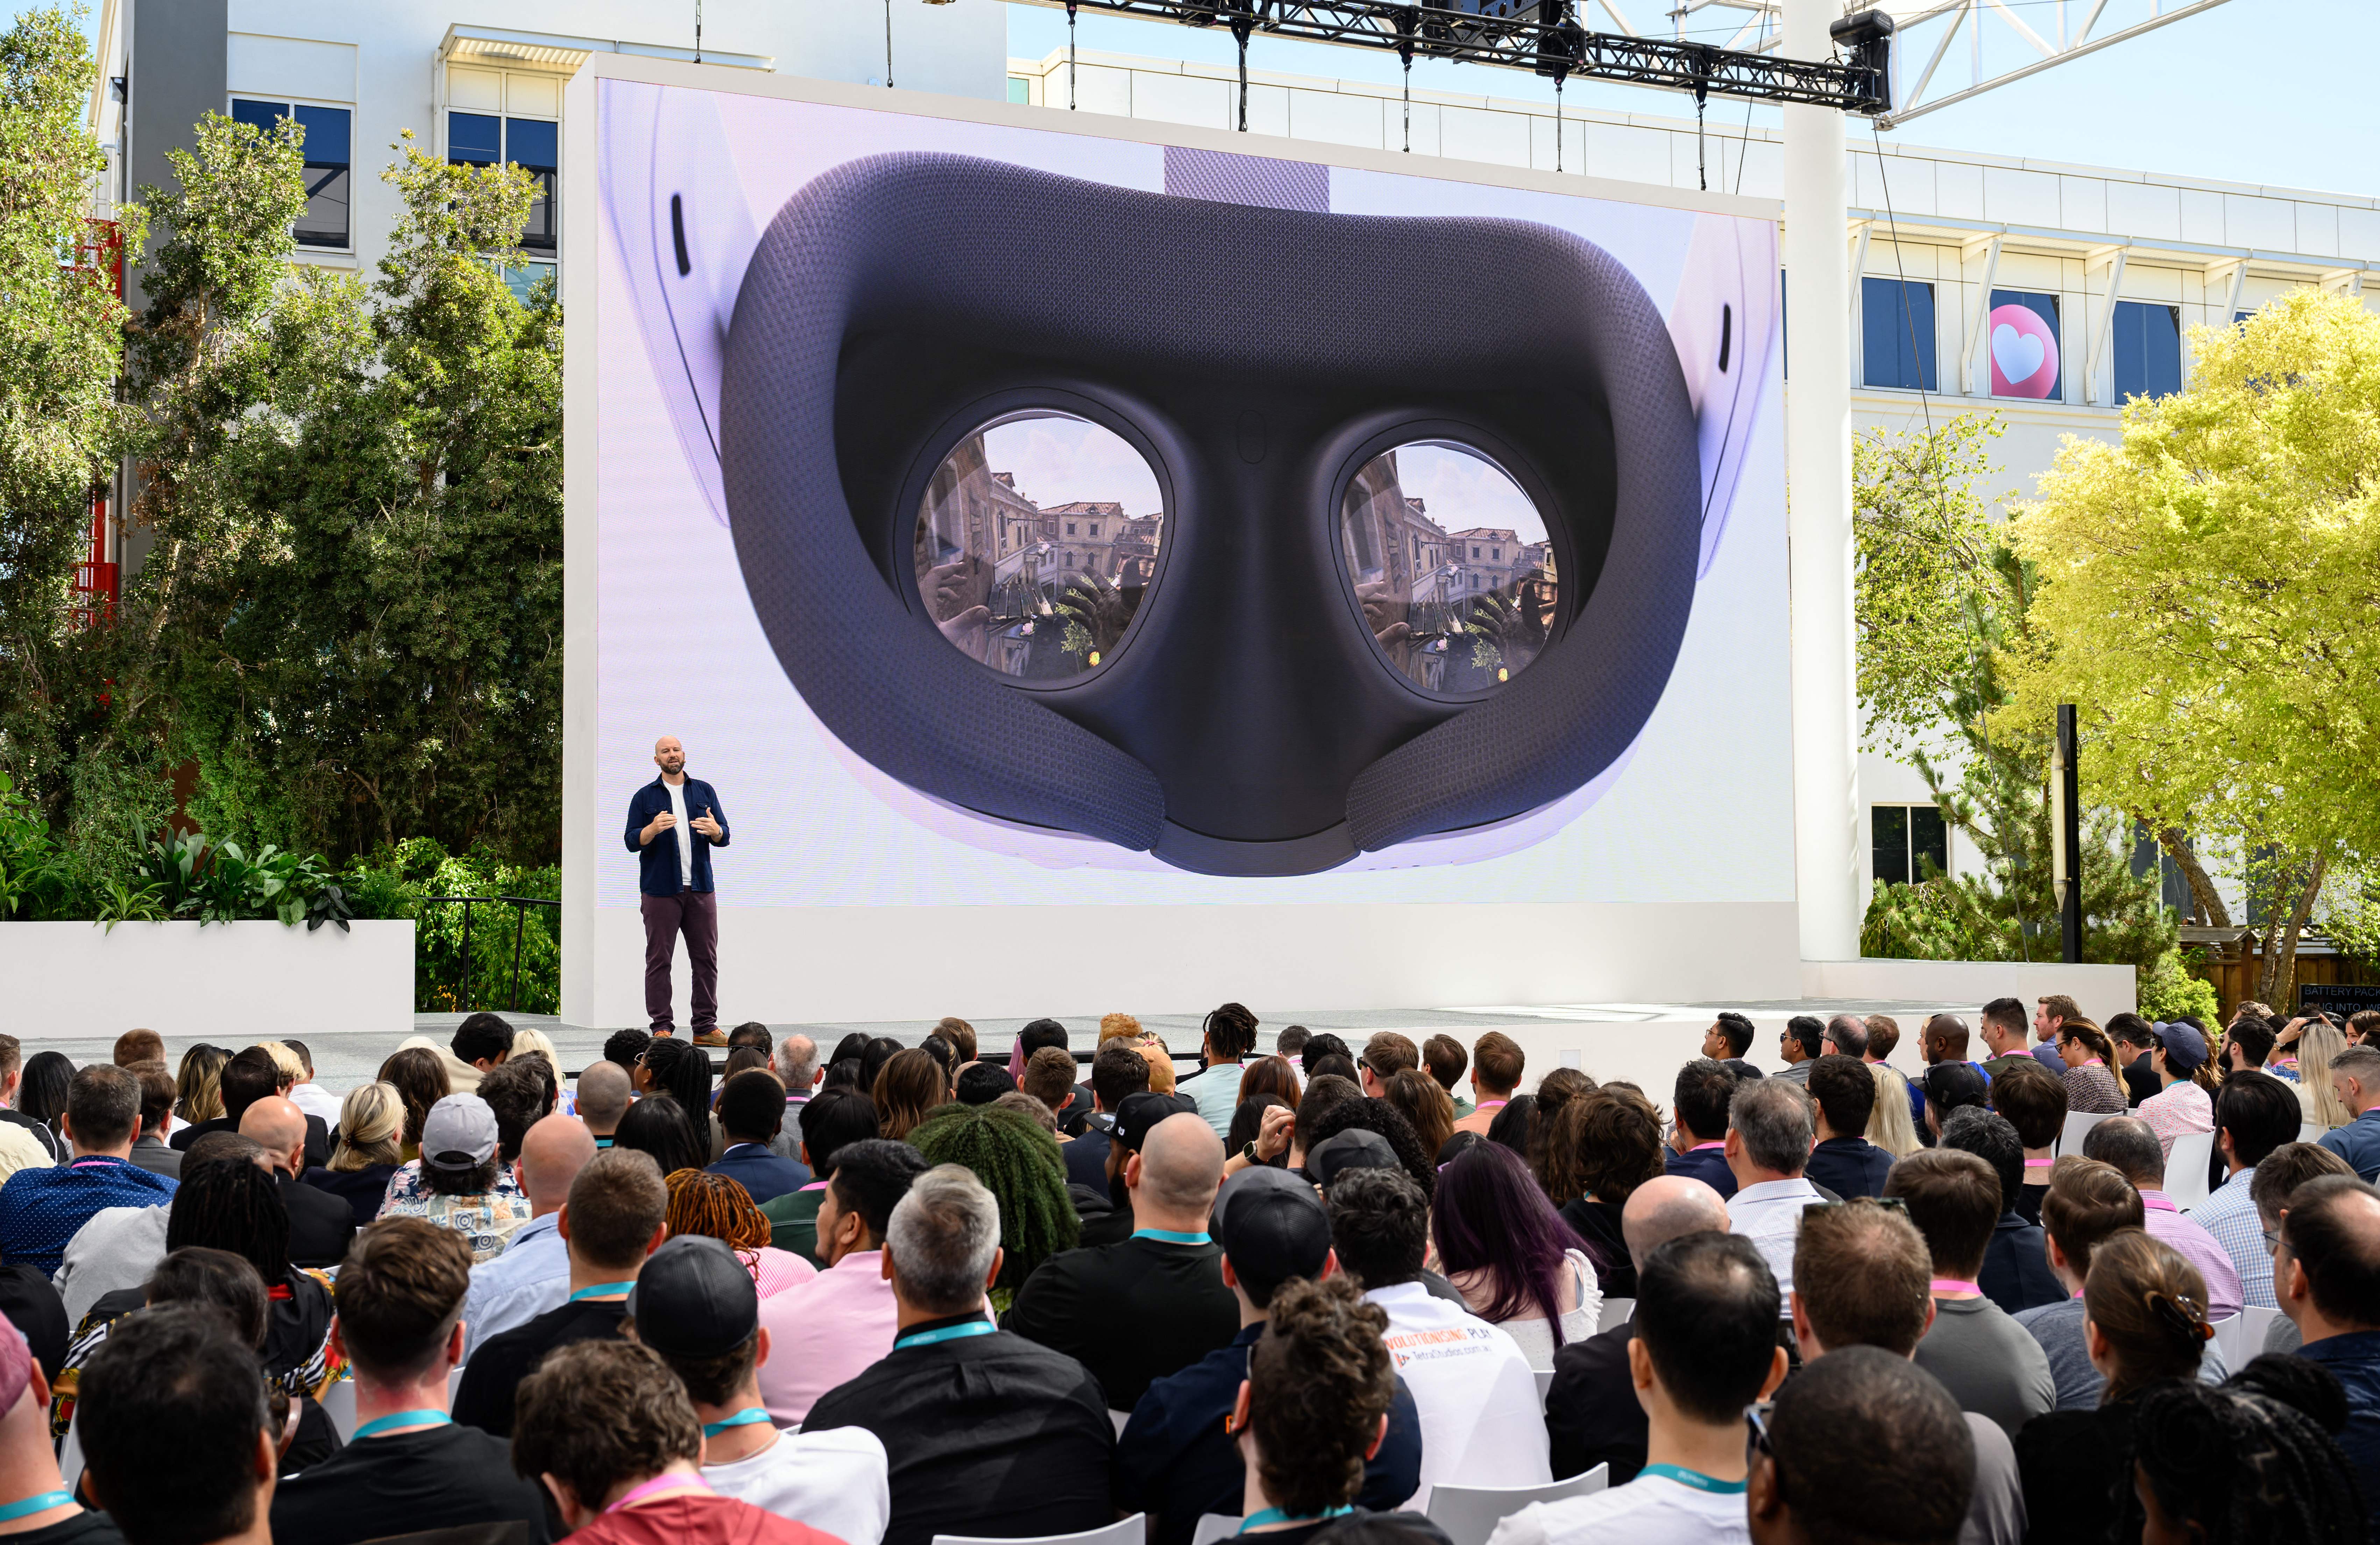 Meta berterima kasih kepada Apple karena telah menghadirkan lebih banyak kegembiraan pada konferensi realitas virtualnya